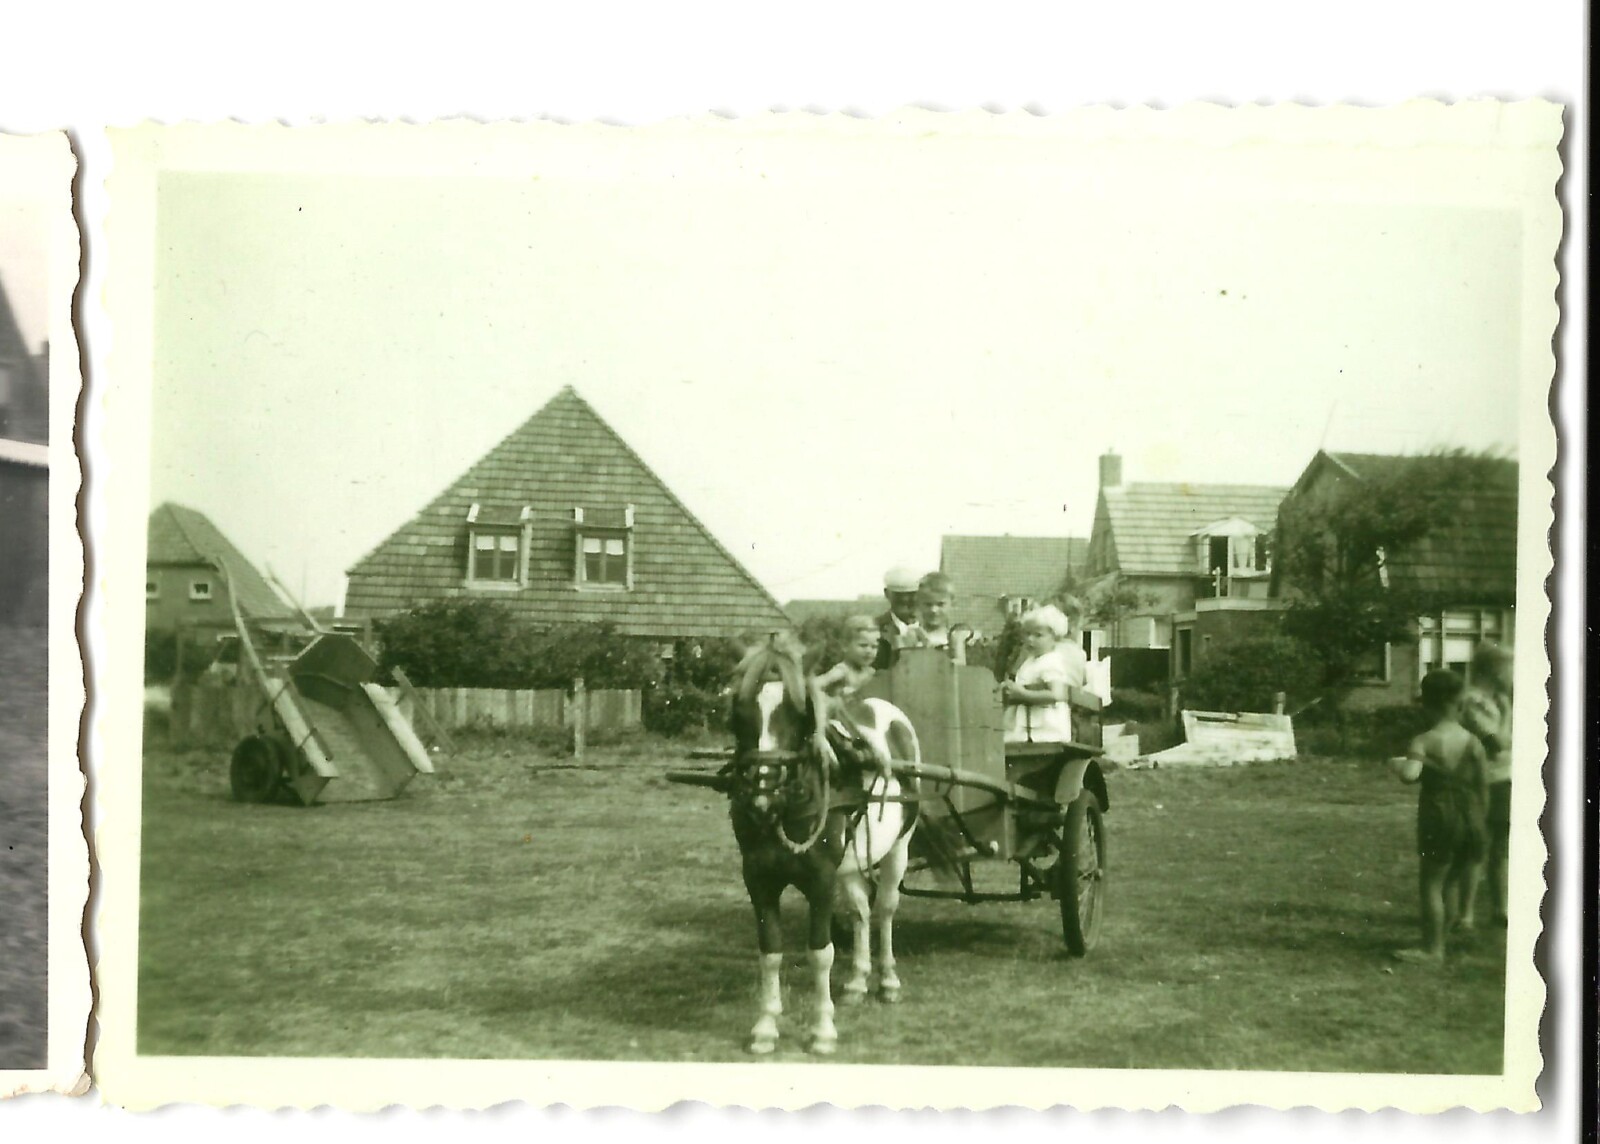 Kaapstraat De Koog erf Dalmeijer Kaapstraat ponywagen ca 1960